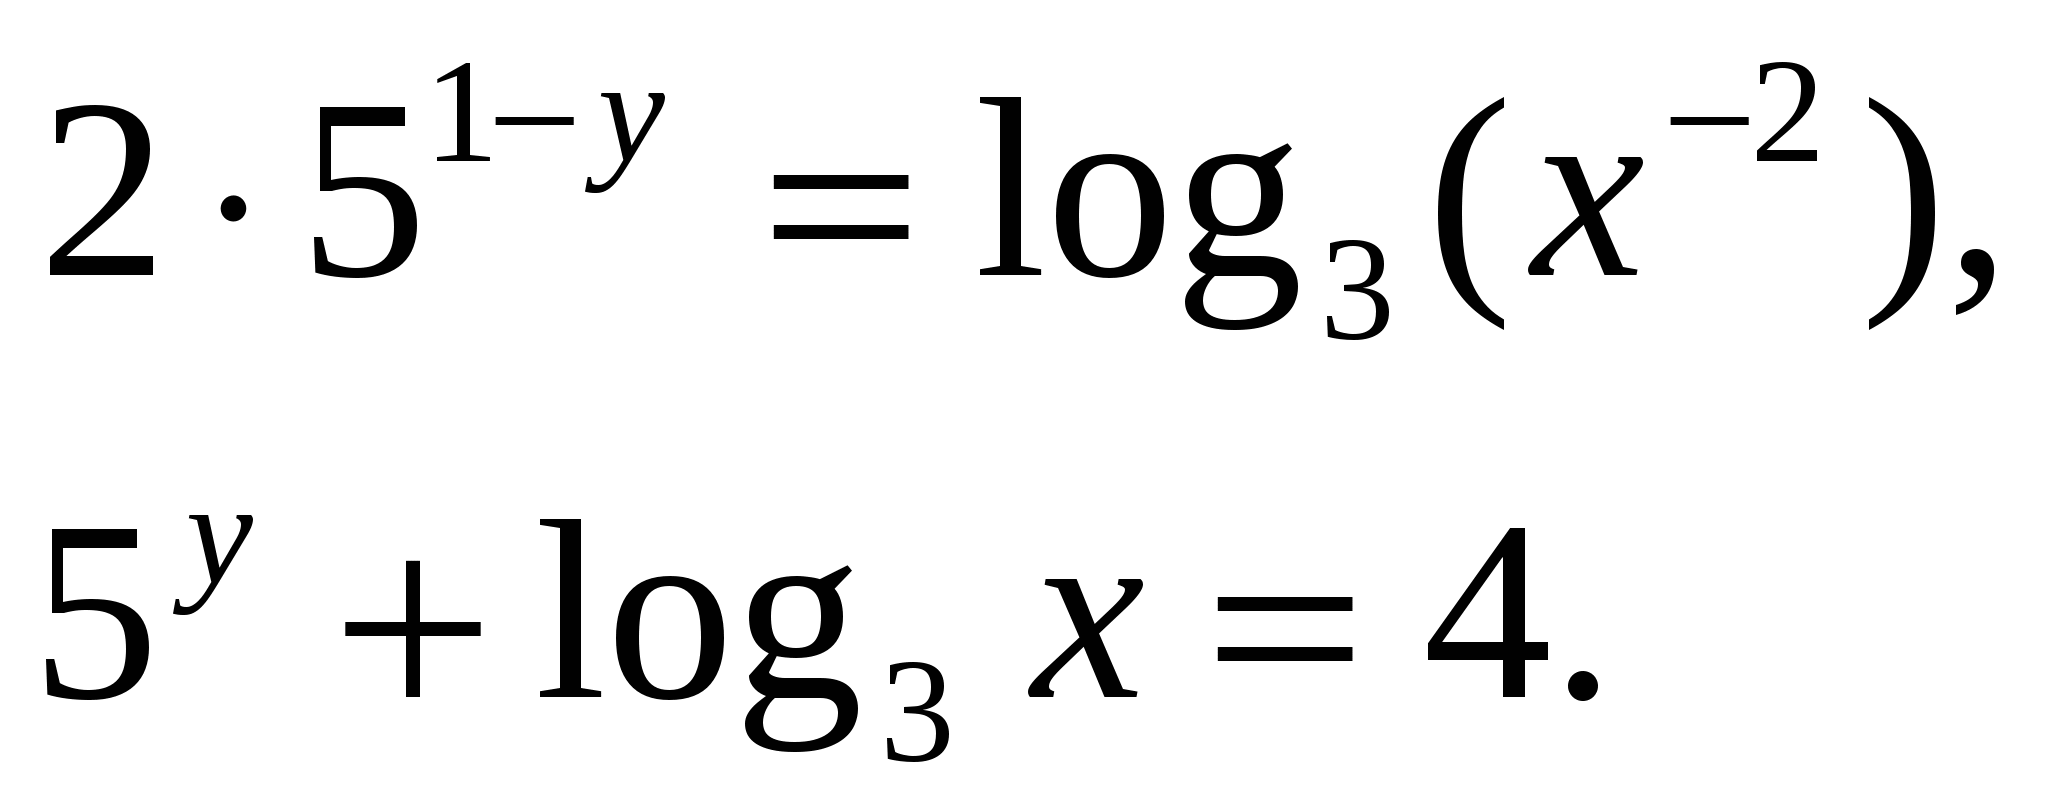 Конспект урока по математике на тему Логарифмы